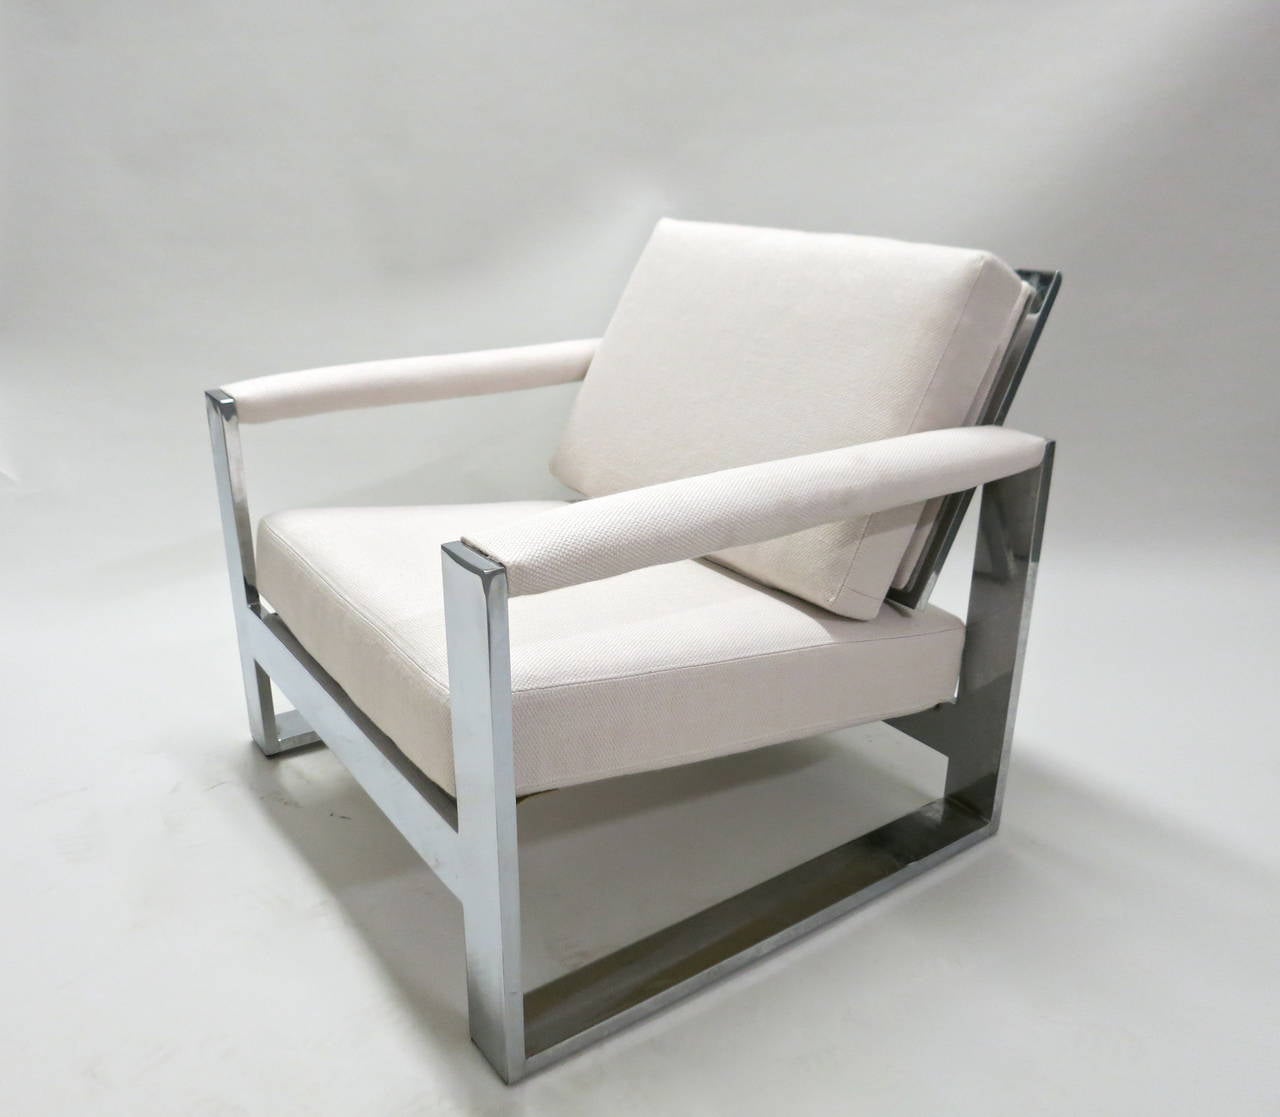 Ein Paar von Milo Baughman entworfene Loungesessel, die mit dem gezeigten cremefarbenen Stoff neu gepolstert wurden und aus drei Zoll breiten, flachen, polierten, verchromten Stahlrahmen bestehen. Diese sind stark und robust und wurden in den 1970er